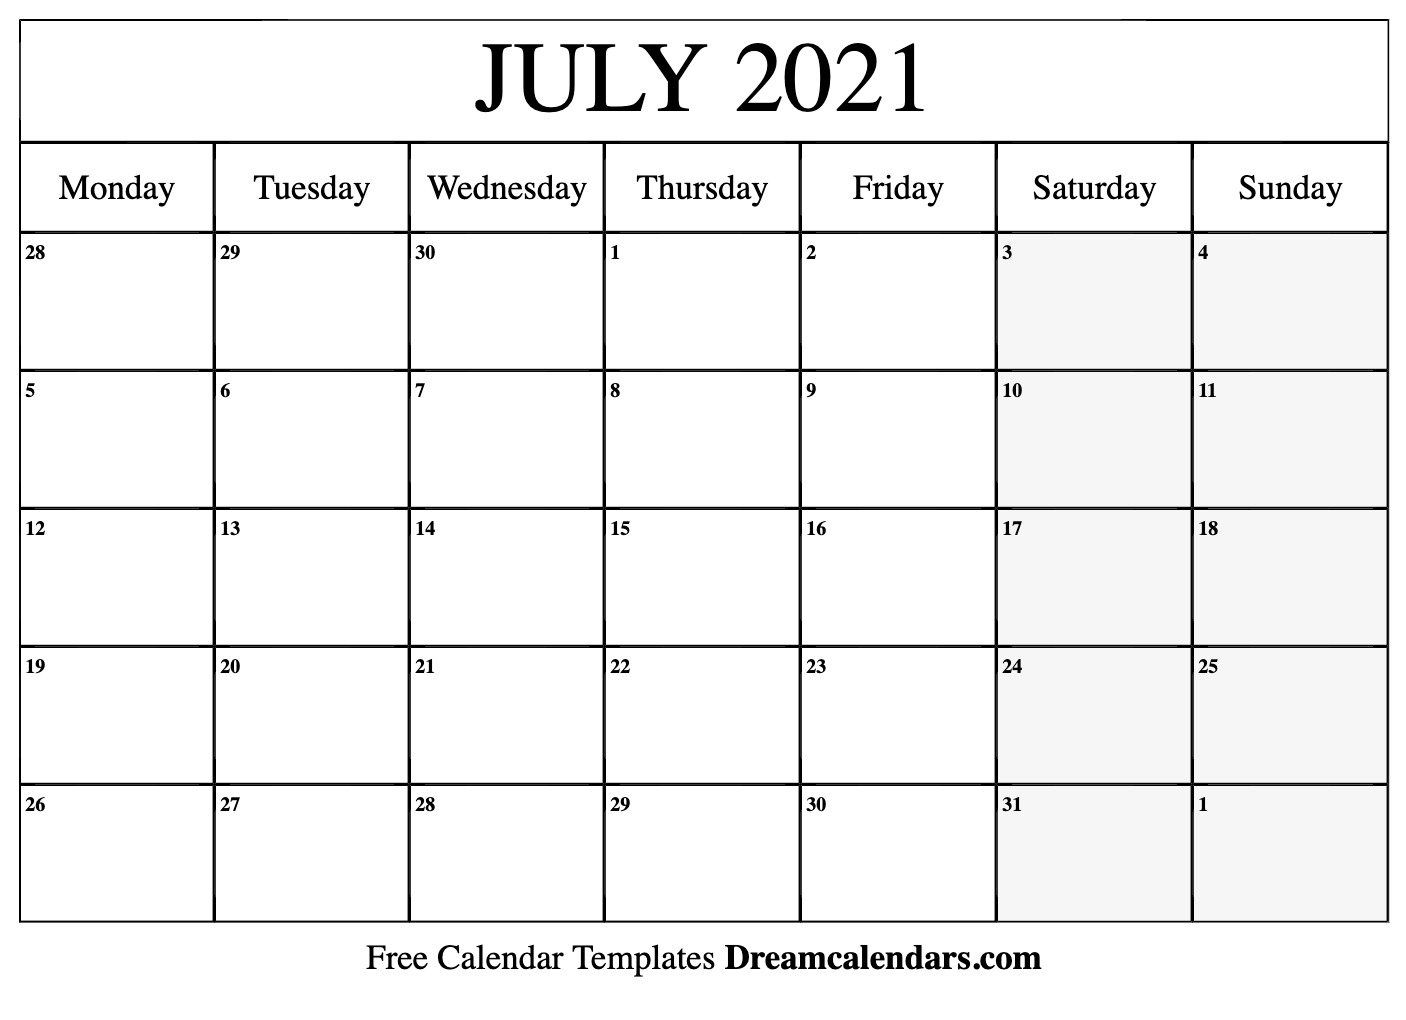 Kalendar july 2021